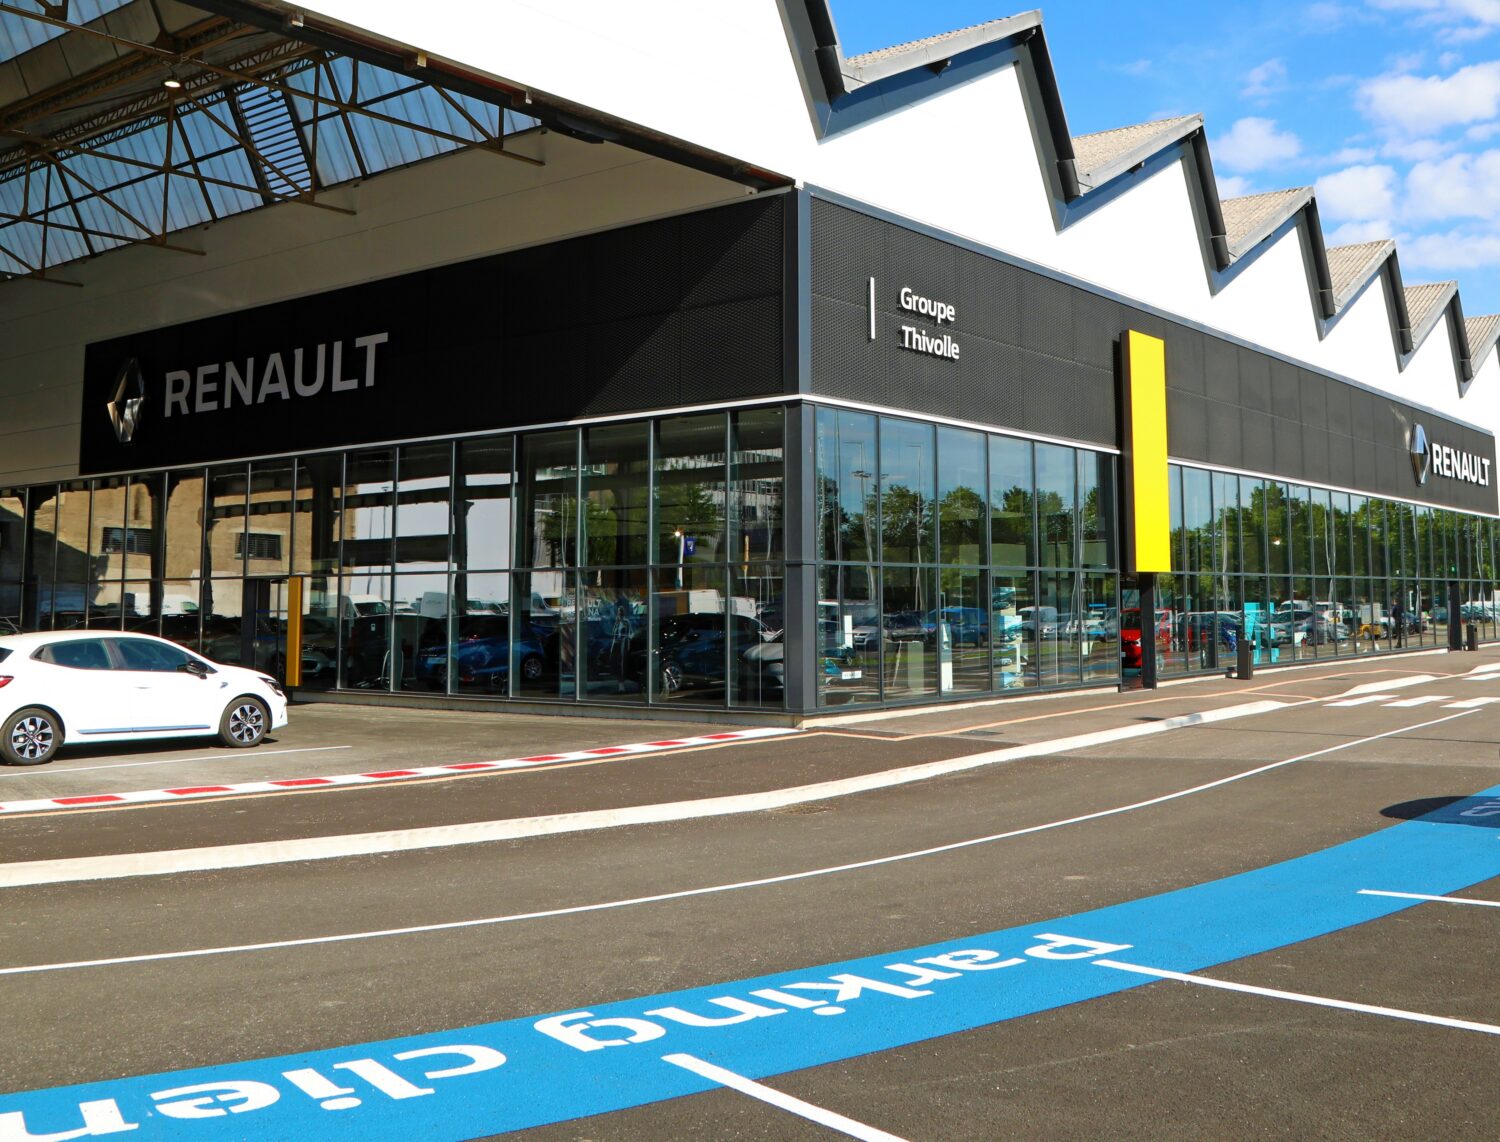 2021 - Renault Live - Renault Saint Etienne (Groupe Thivolle)